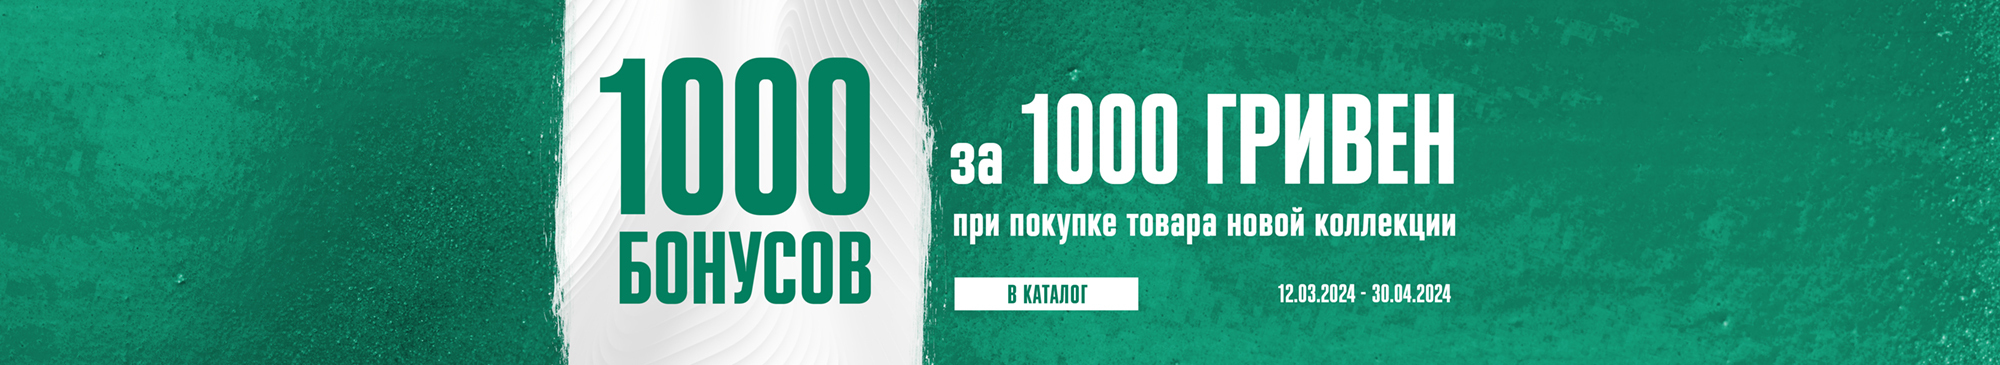 1000 Бонусов за 1000 гривен